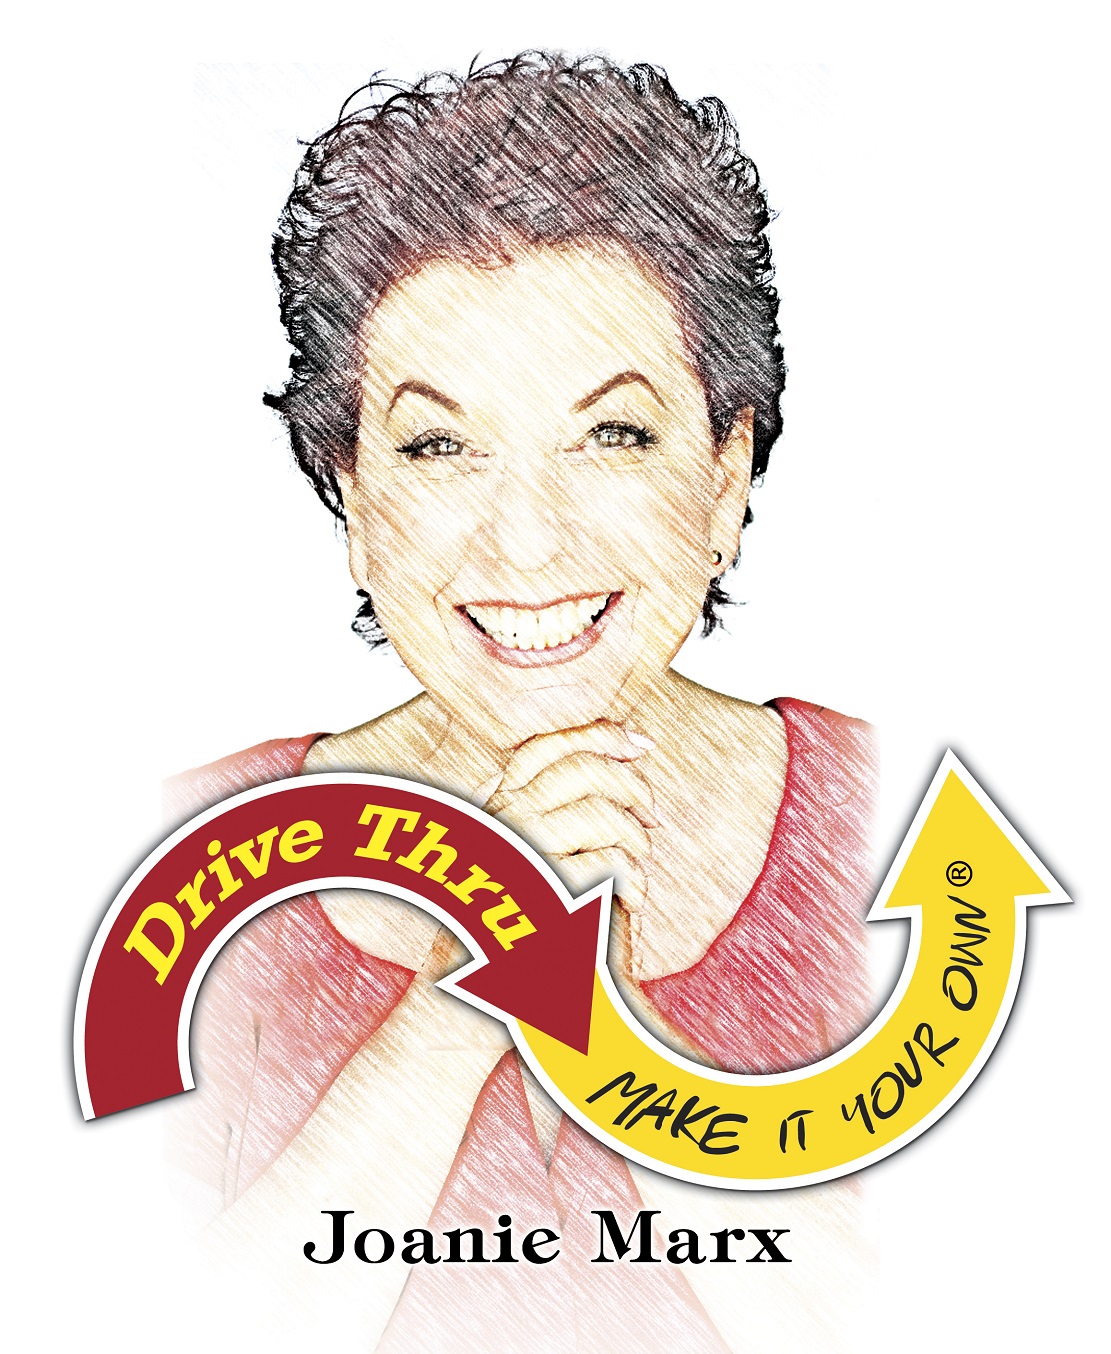 Joanie Marx Logo